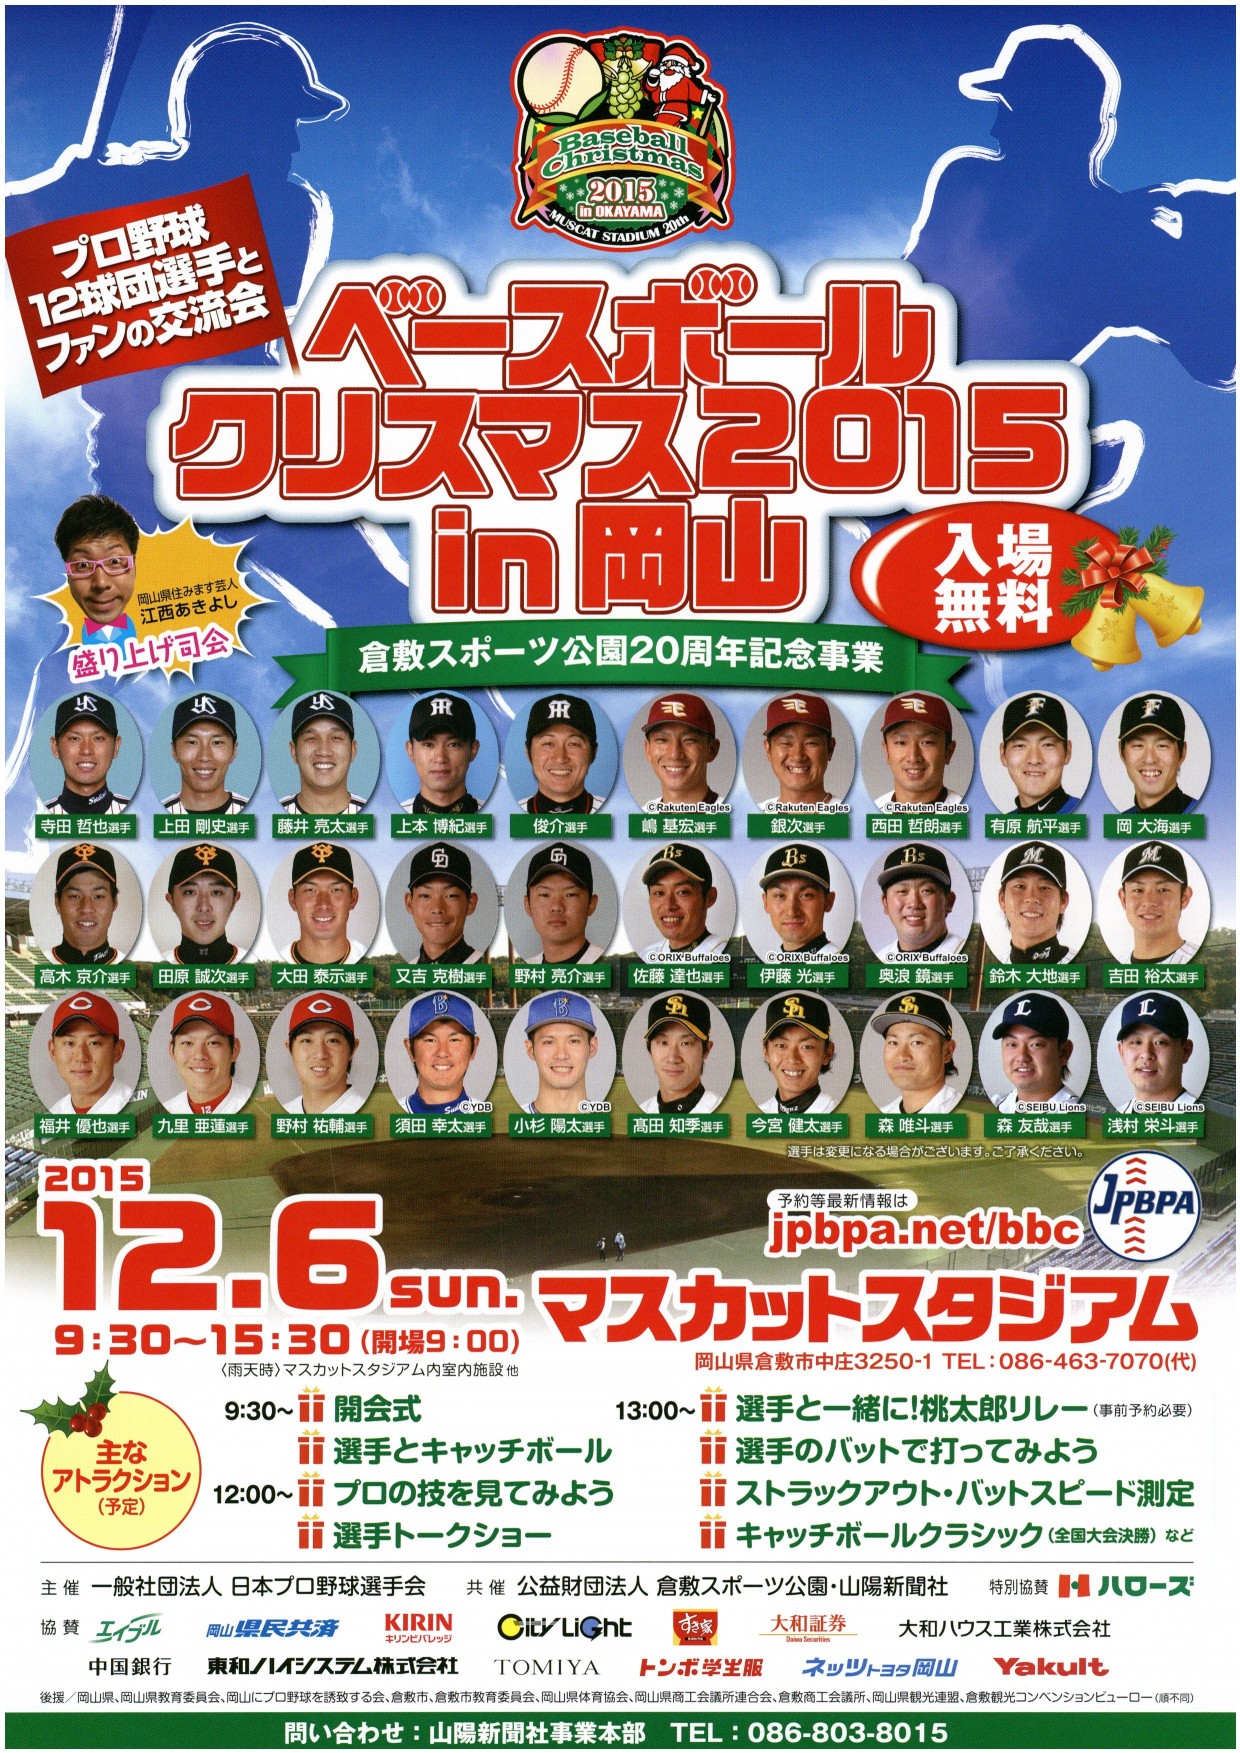 15 12 6 ベースボールクリスマス２０１５in岡山 子どもとおでかけ 岡山イベント情報